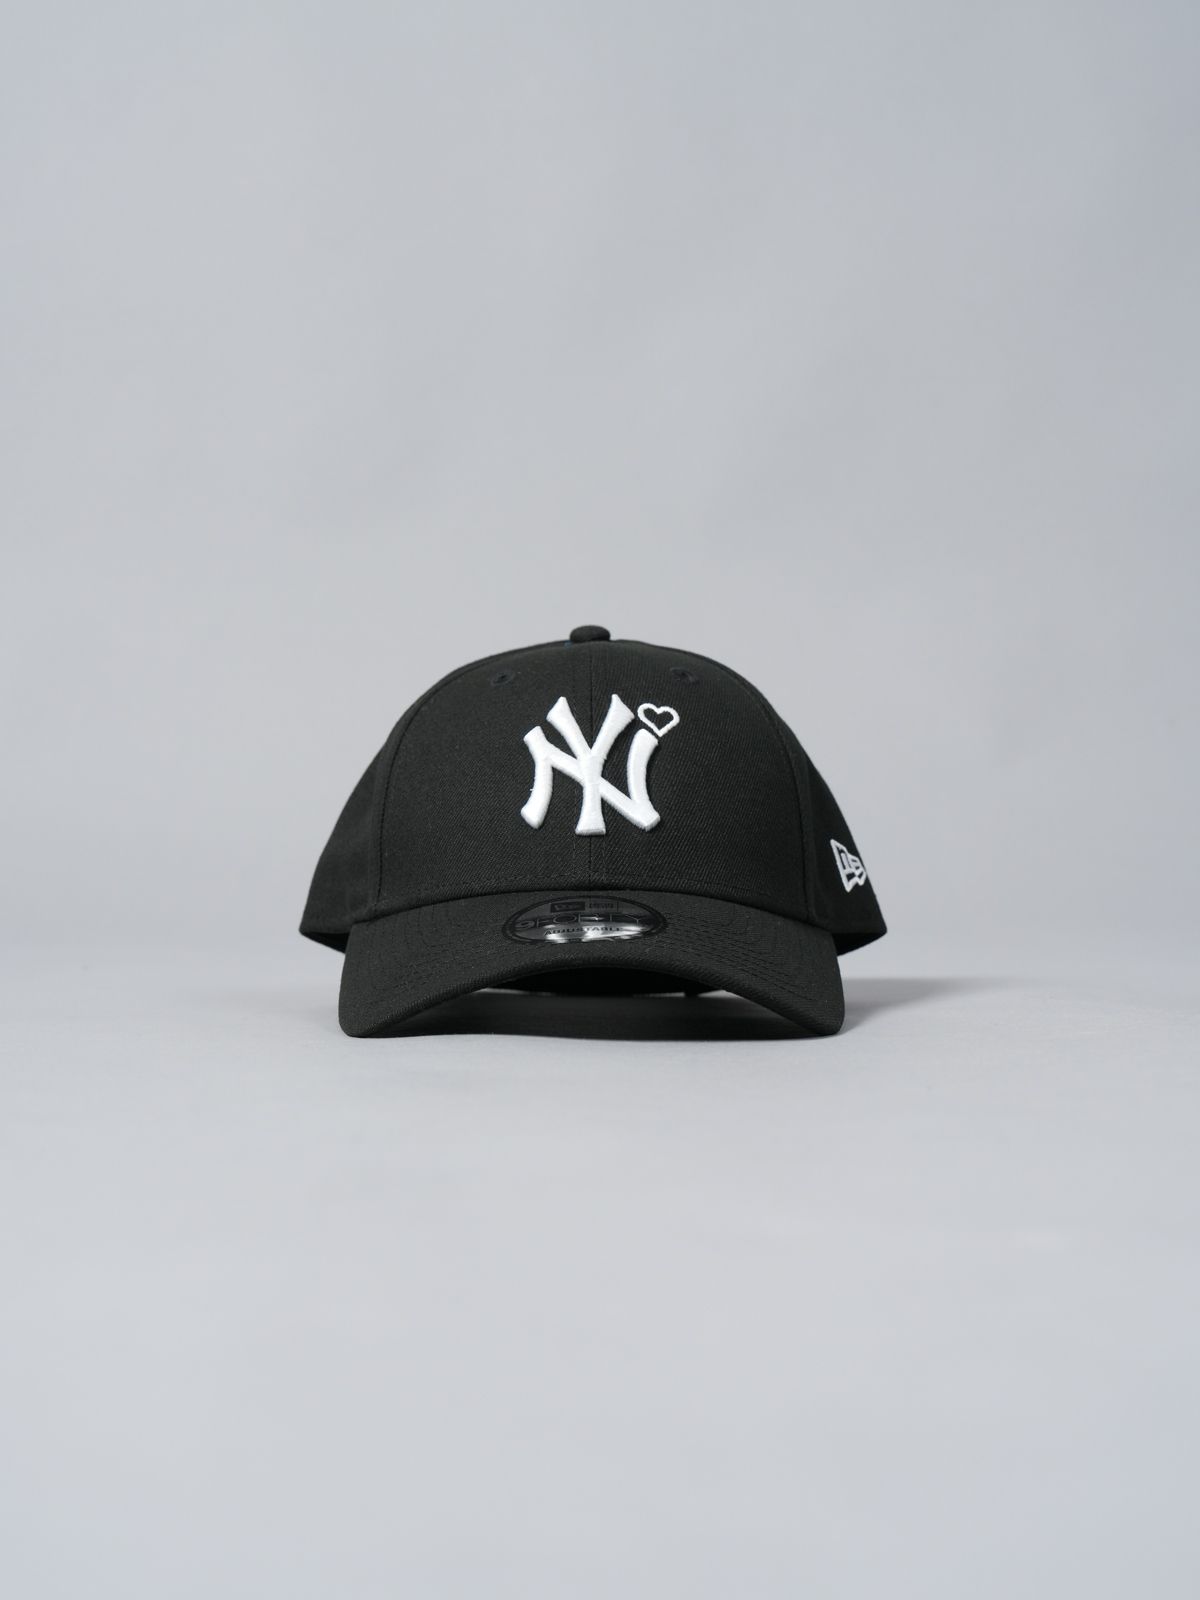 カラーホワイト×ネイビー【完売品】BASICKS 24ss newera Yankees cap